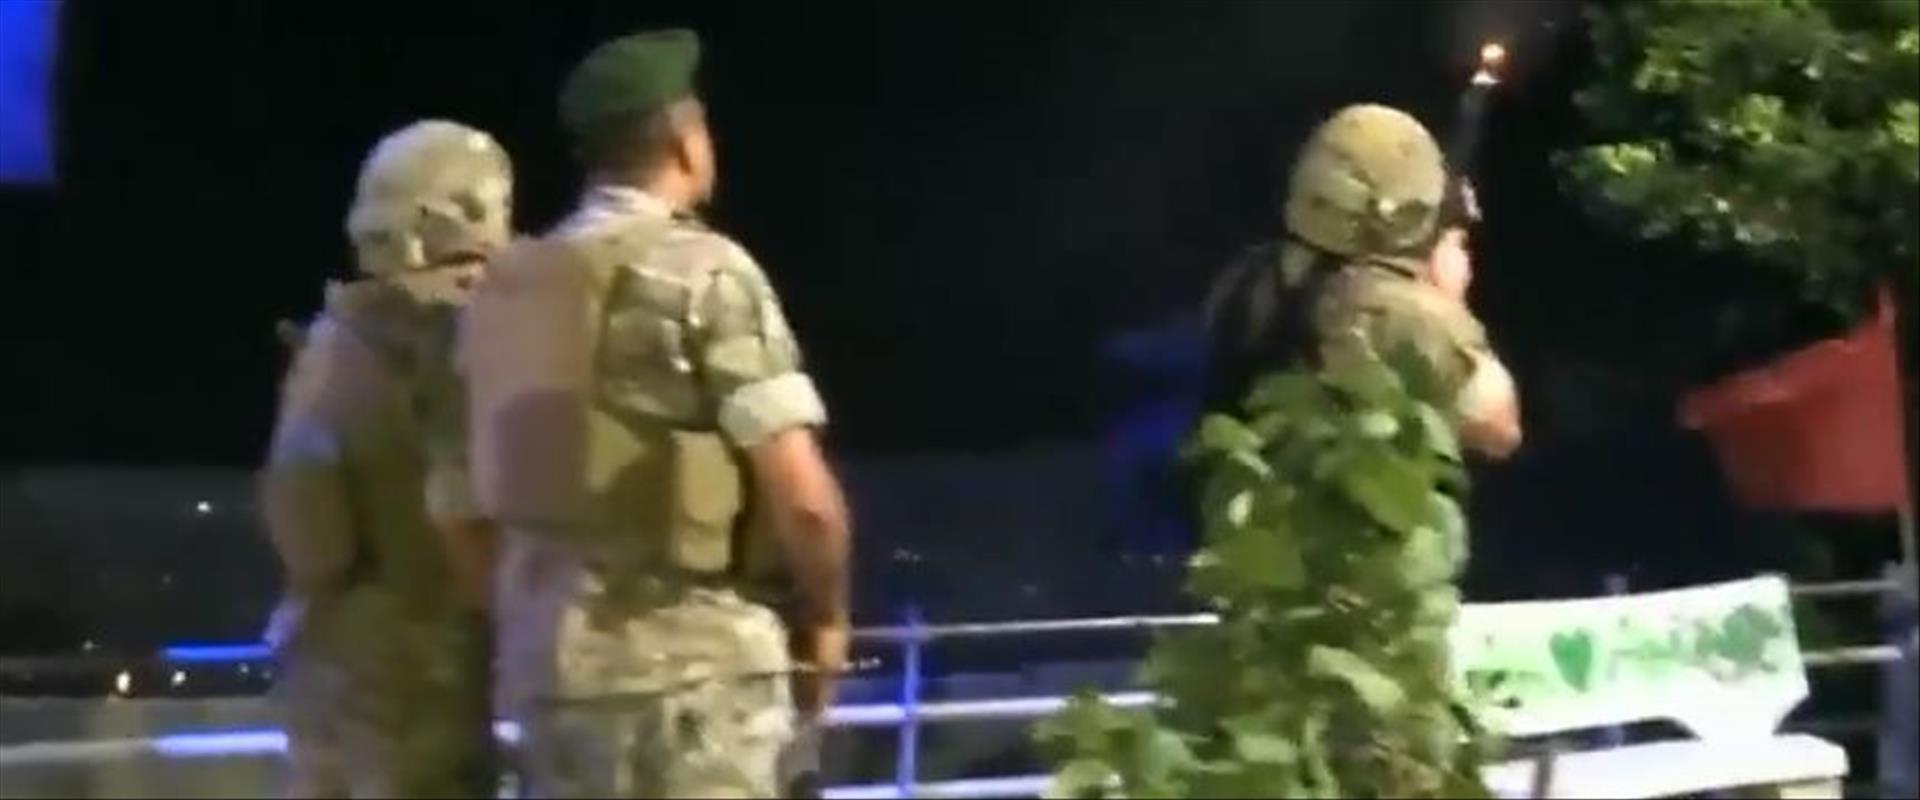 תיעוד לבנוני של הירי לעבר הרחפנים של צה"ל